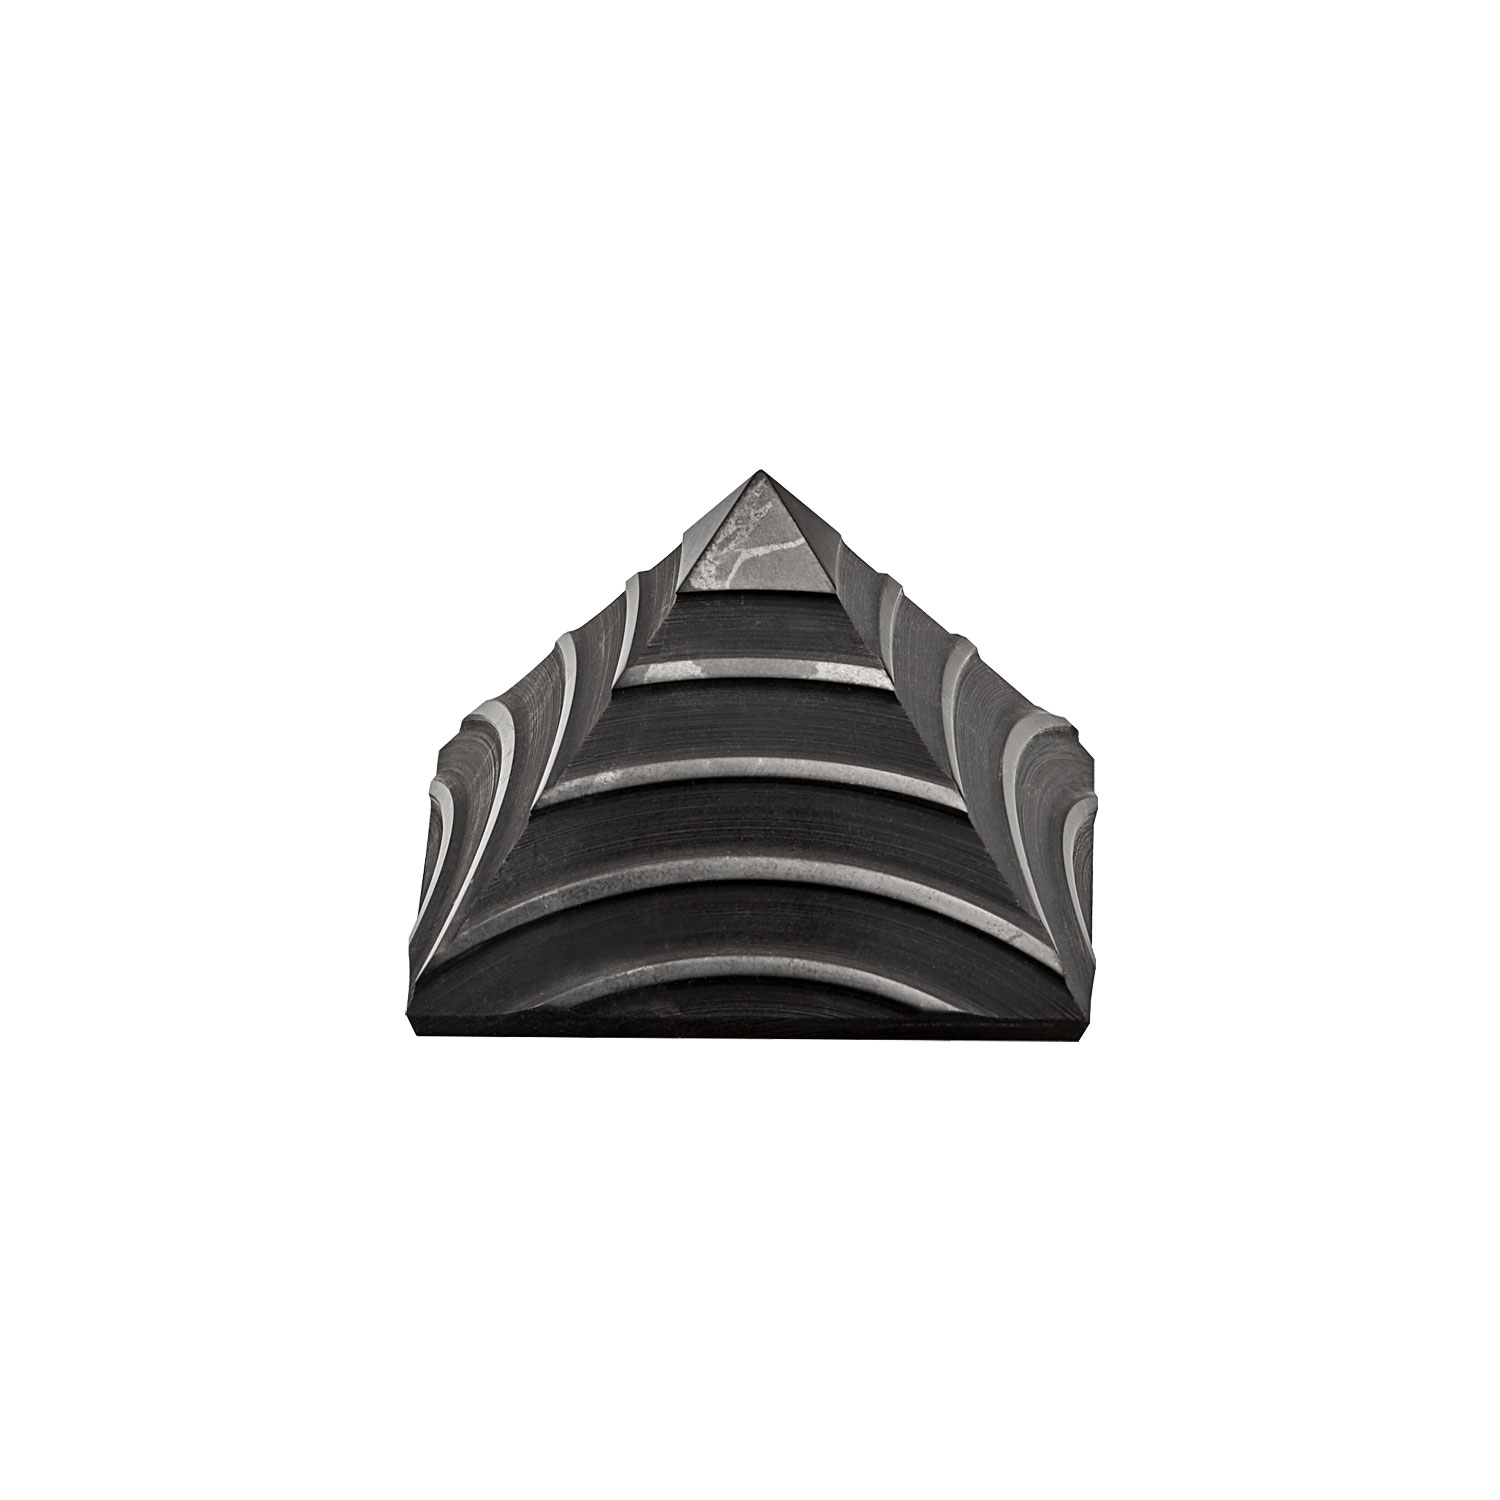 Schungit-Pyramide „Aura-Schutz“, Produktbild 2